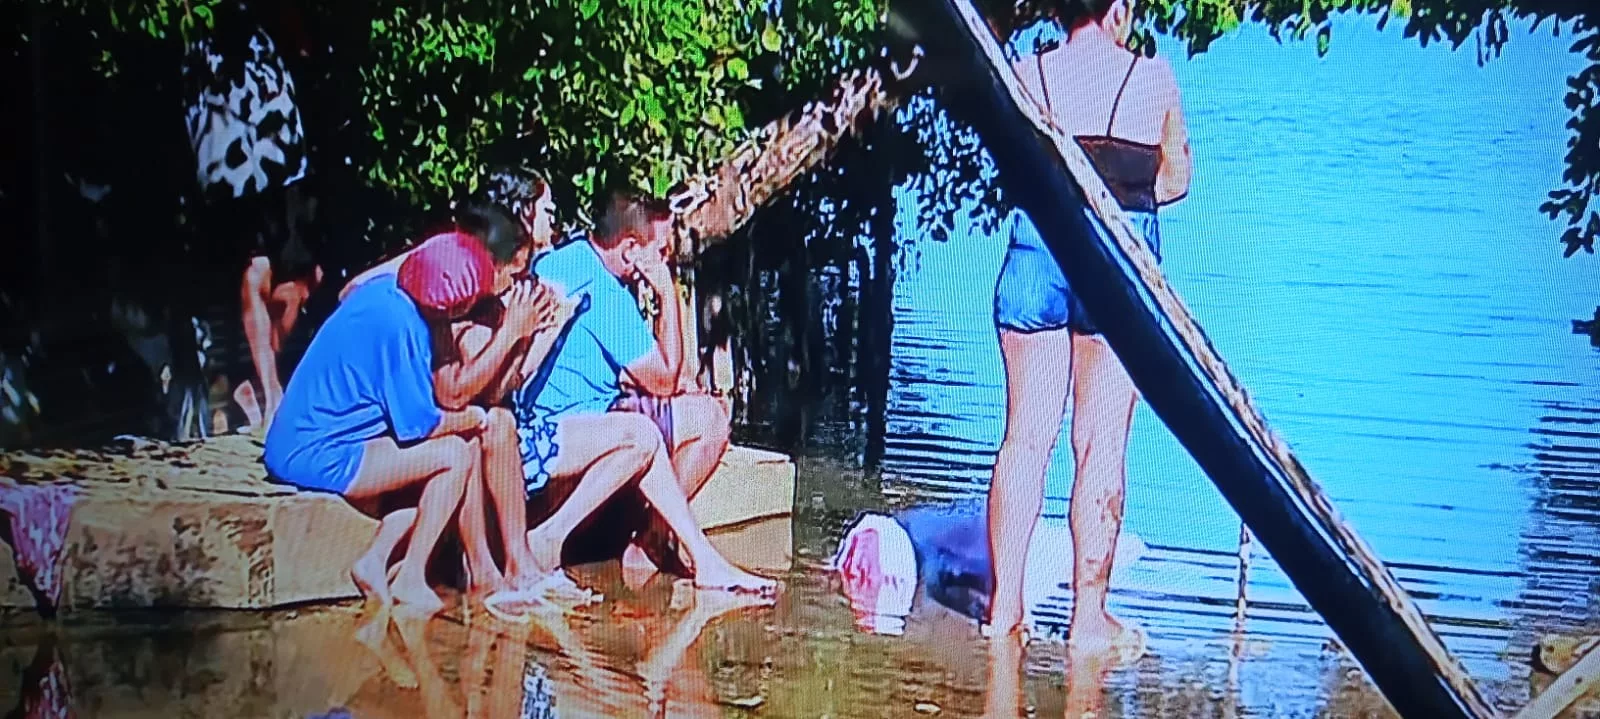 Familiares Encontram Corpo De Menino Que Caiu Na Lagoa Mundaú Alagoas 24 Horas Líder Em 2219